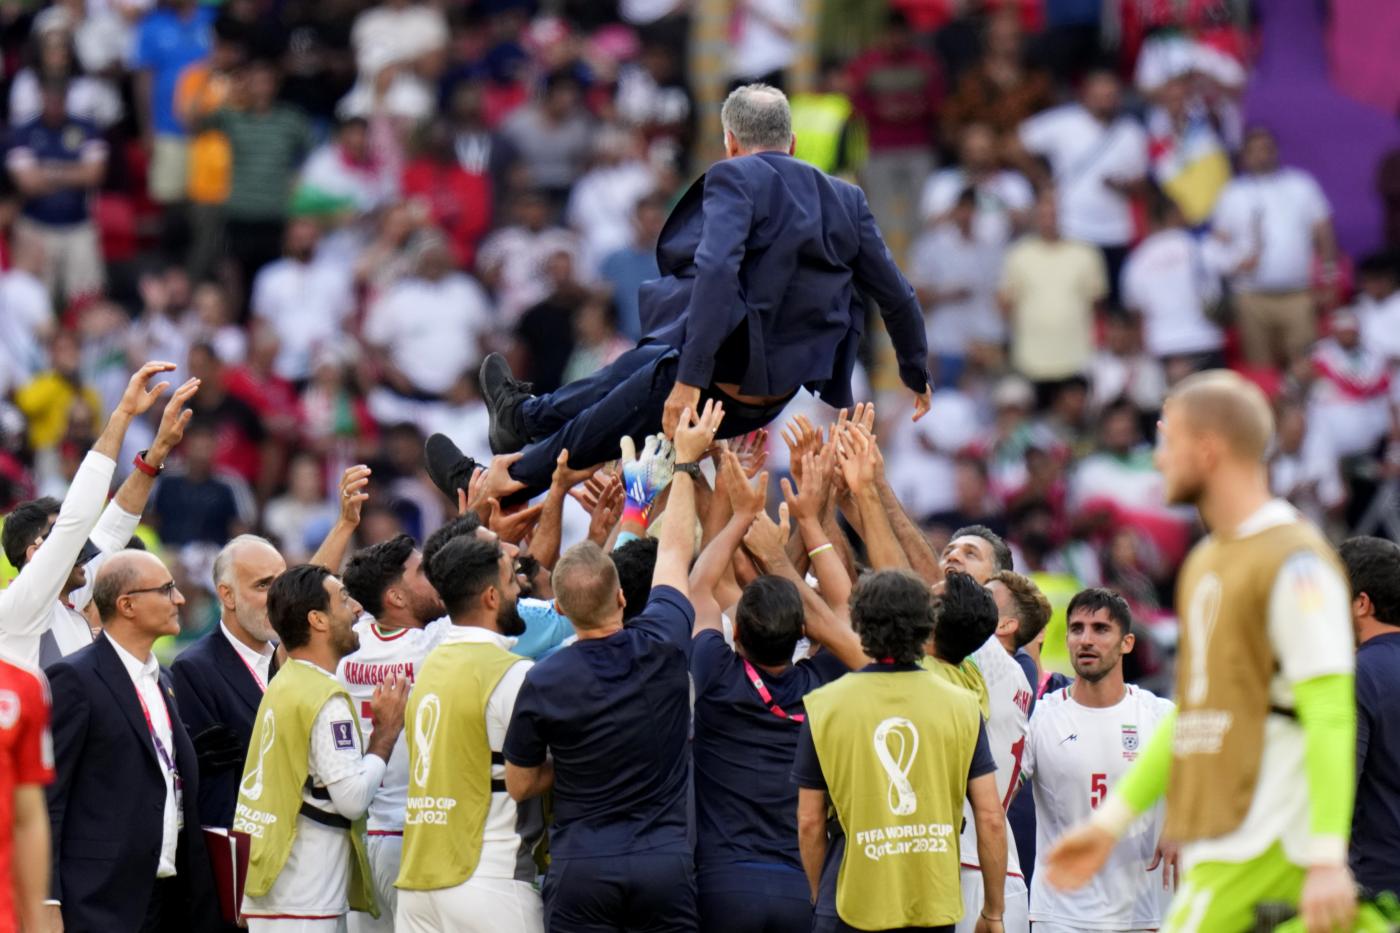 Calcio, Mondiali 2022: è già scontro tra Iran e USA. Le polemiche tra Klinsmann e Queiroz